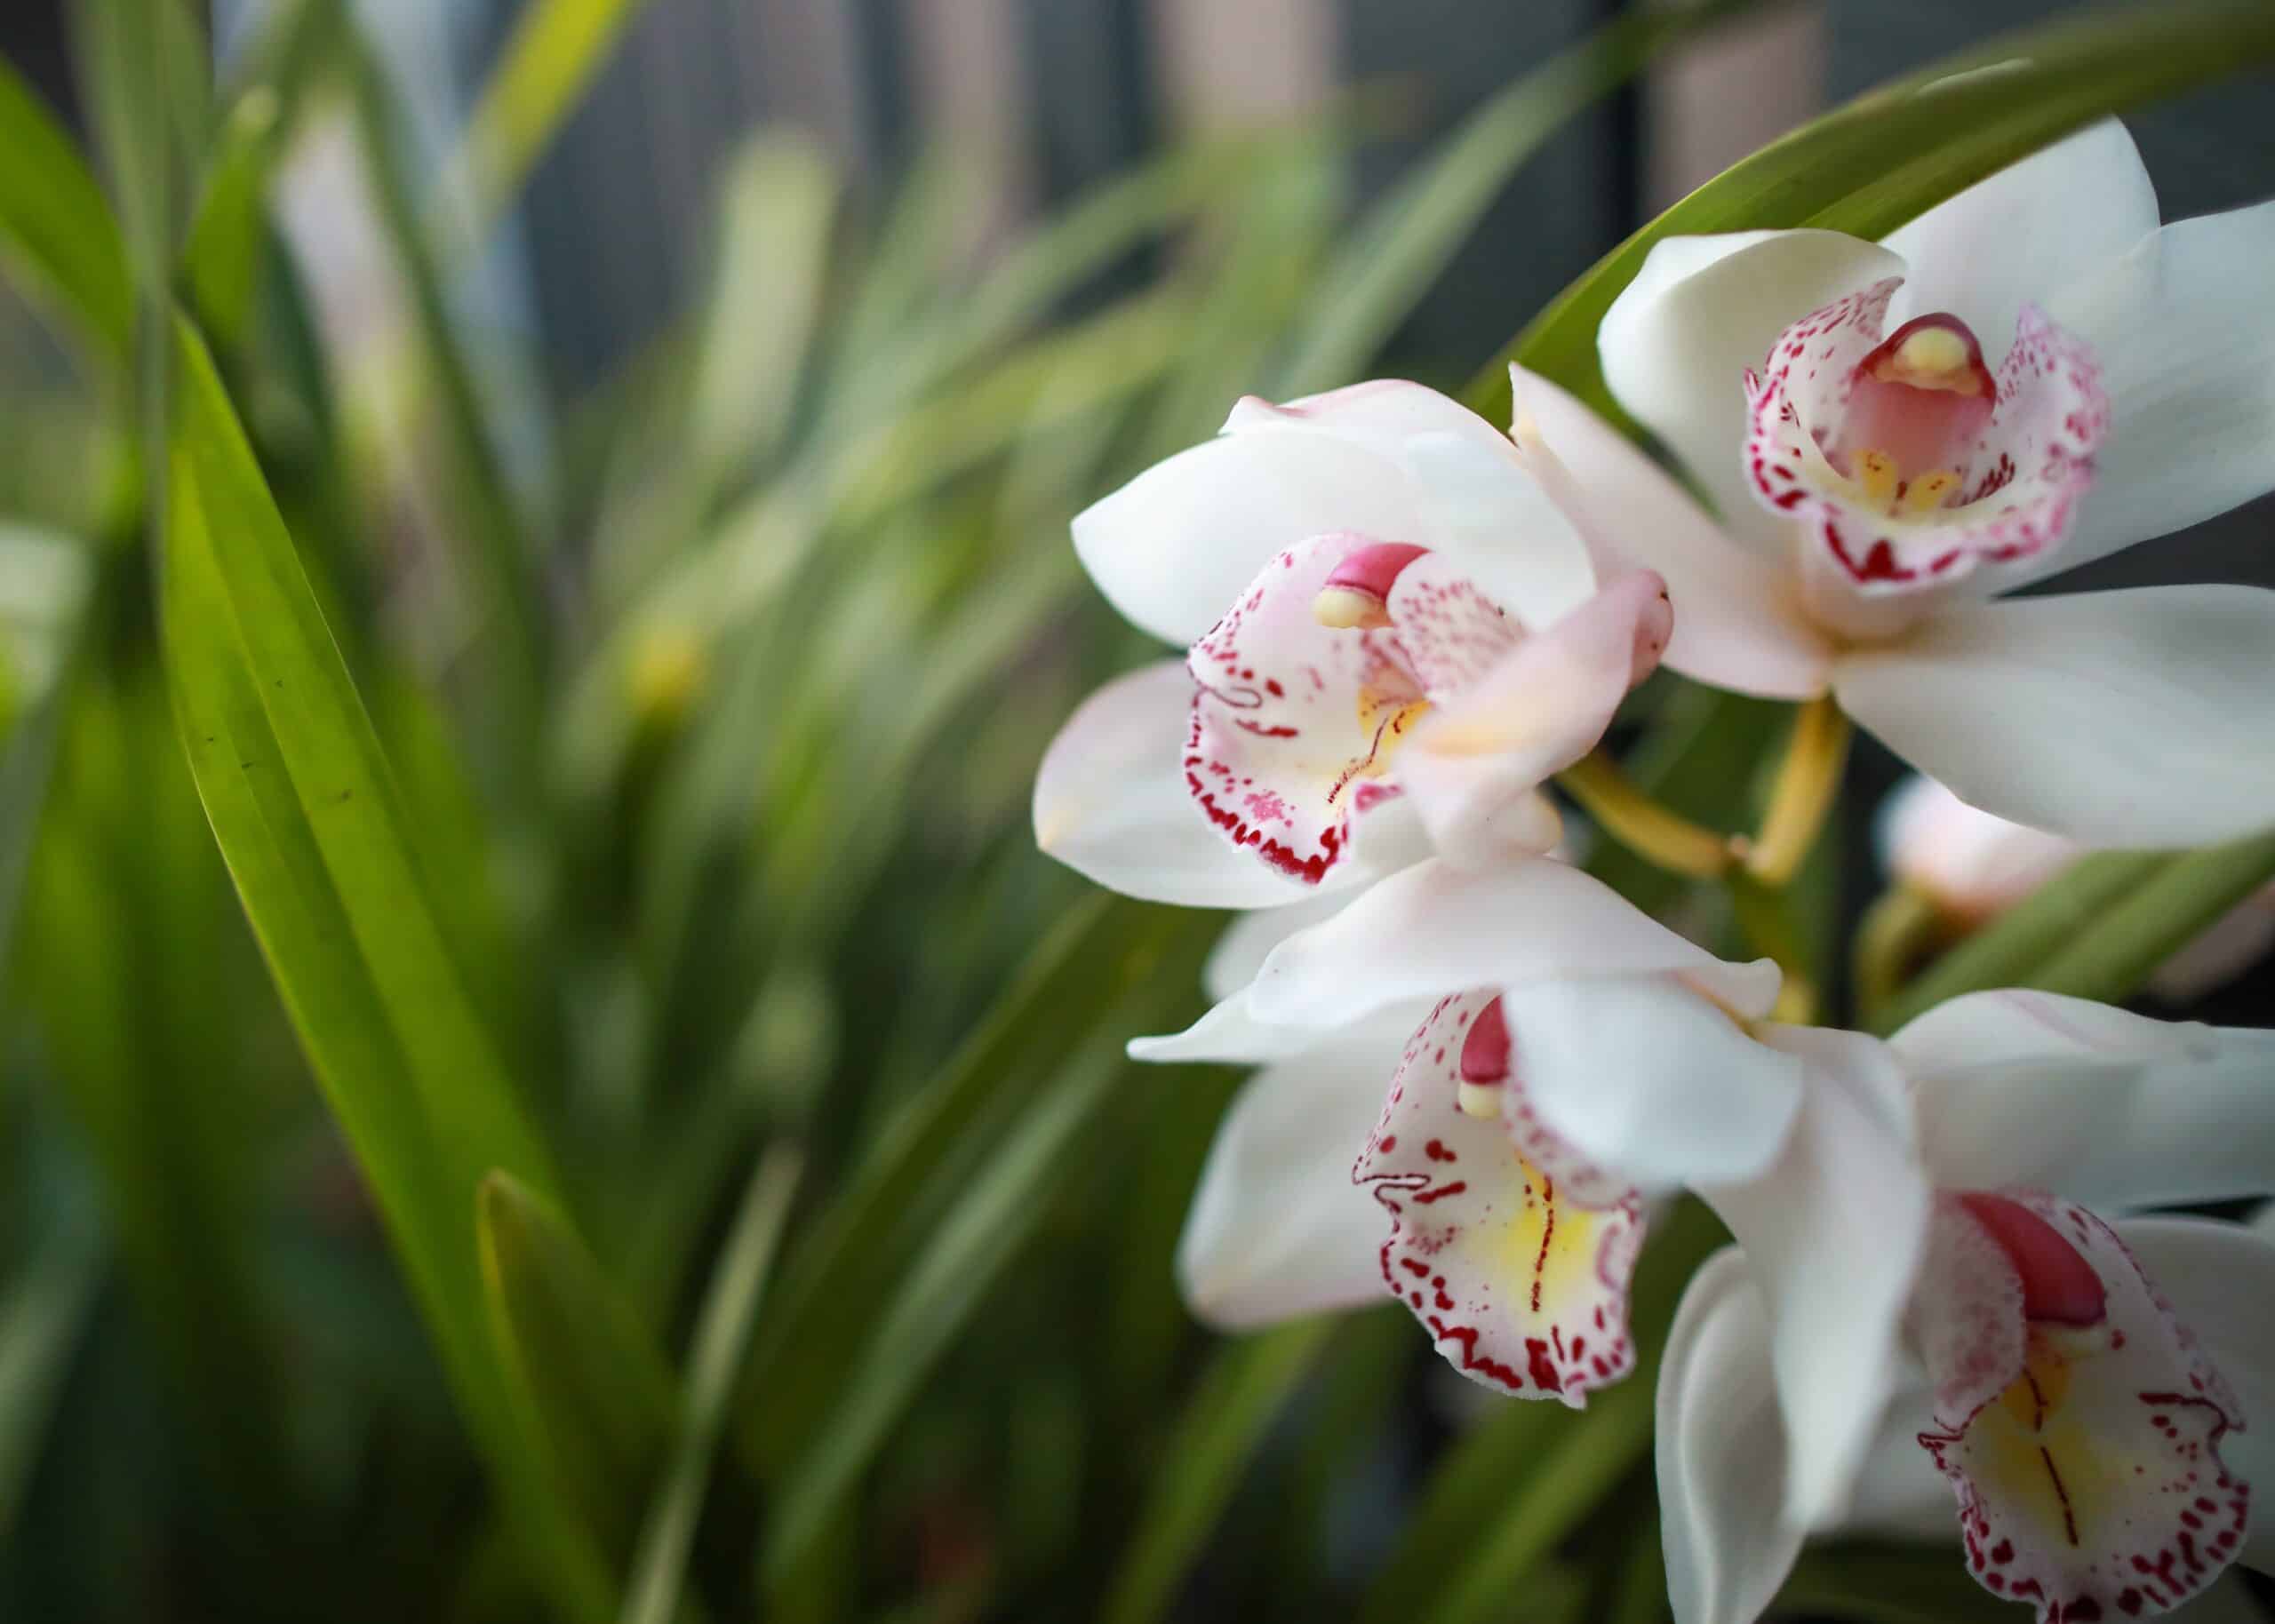 Amantes de las orquídeas, el Franz Mayer los espera